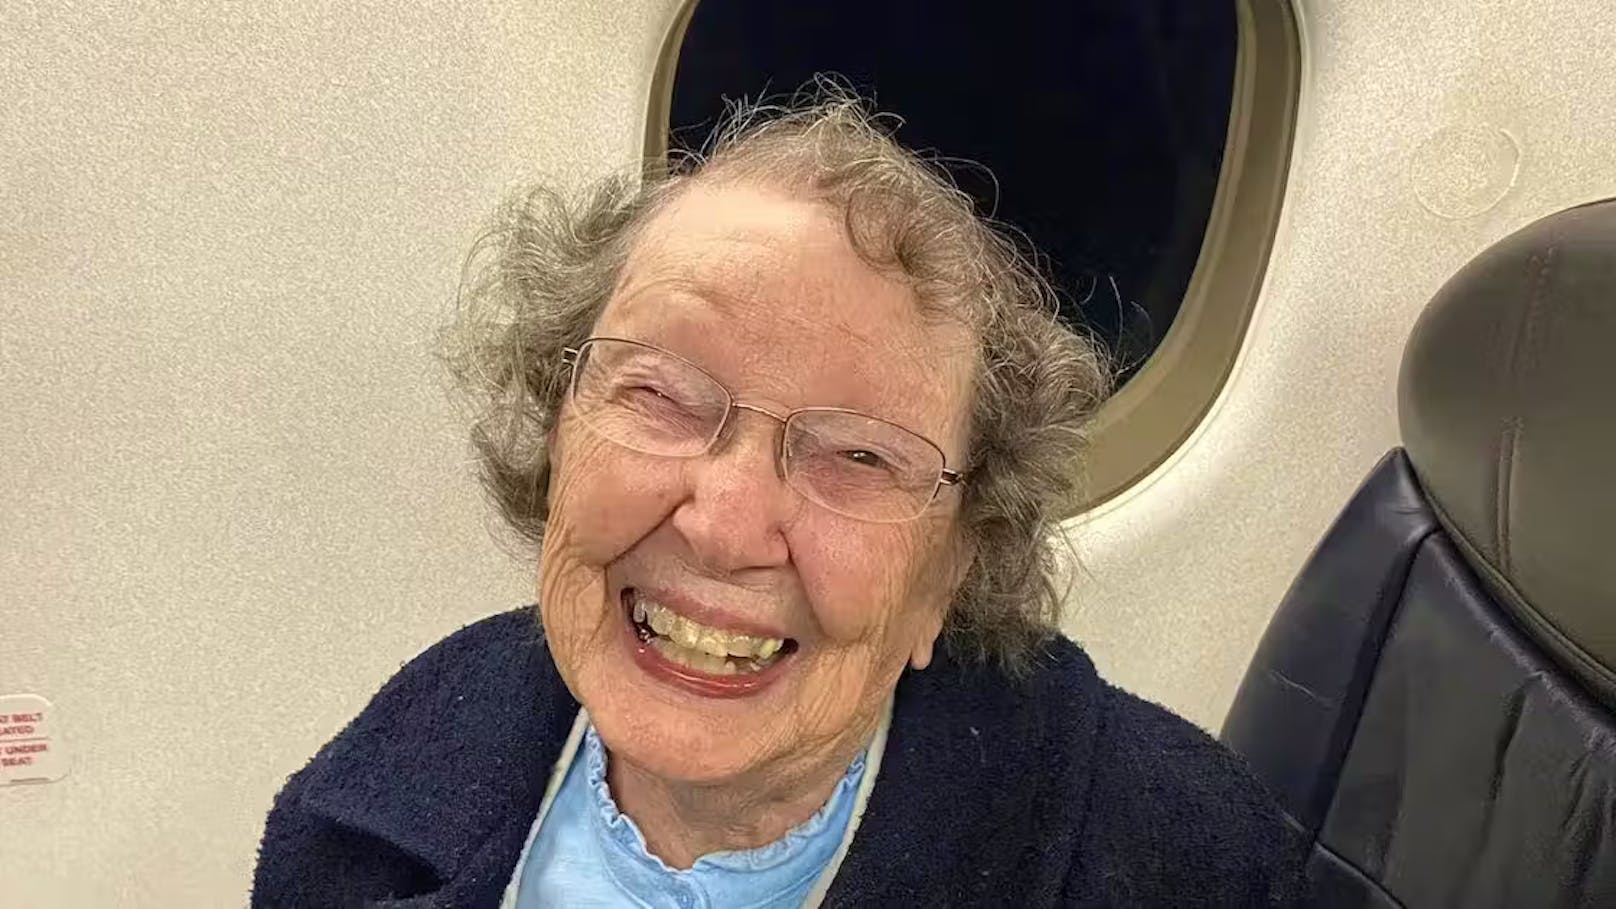 Airline verwechselt 101-jährige Frau mit Kleinkind